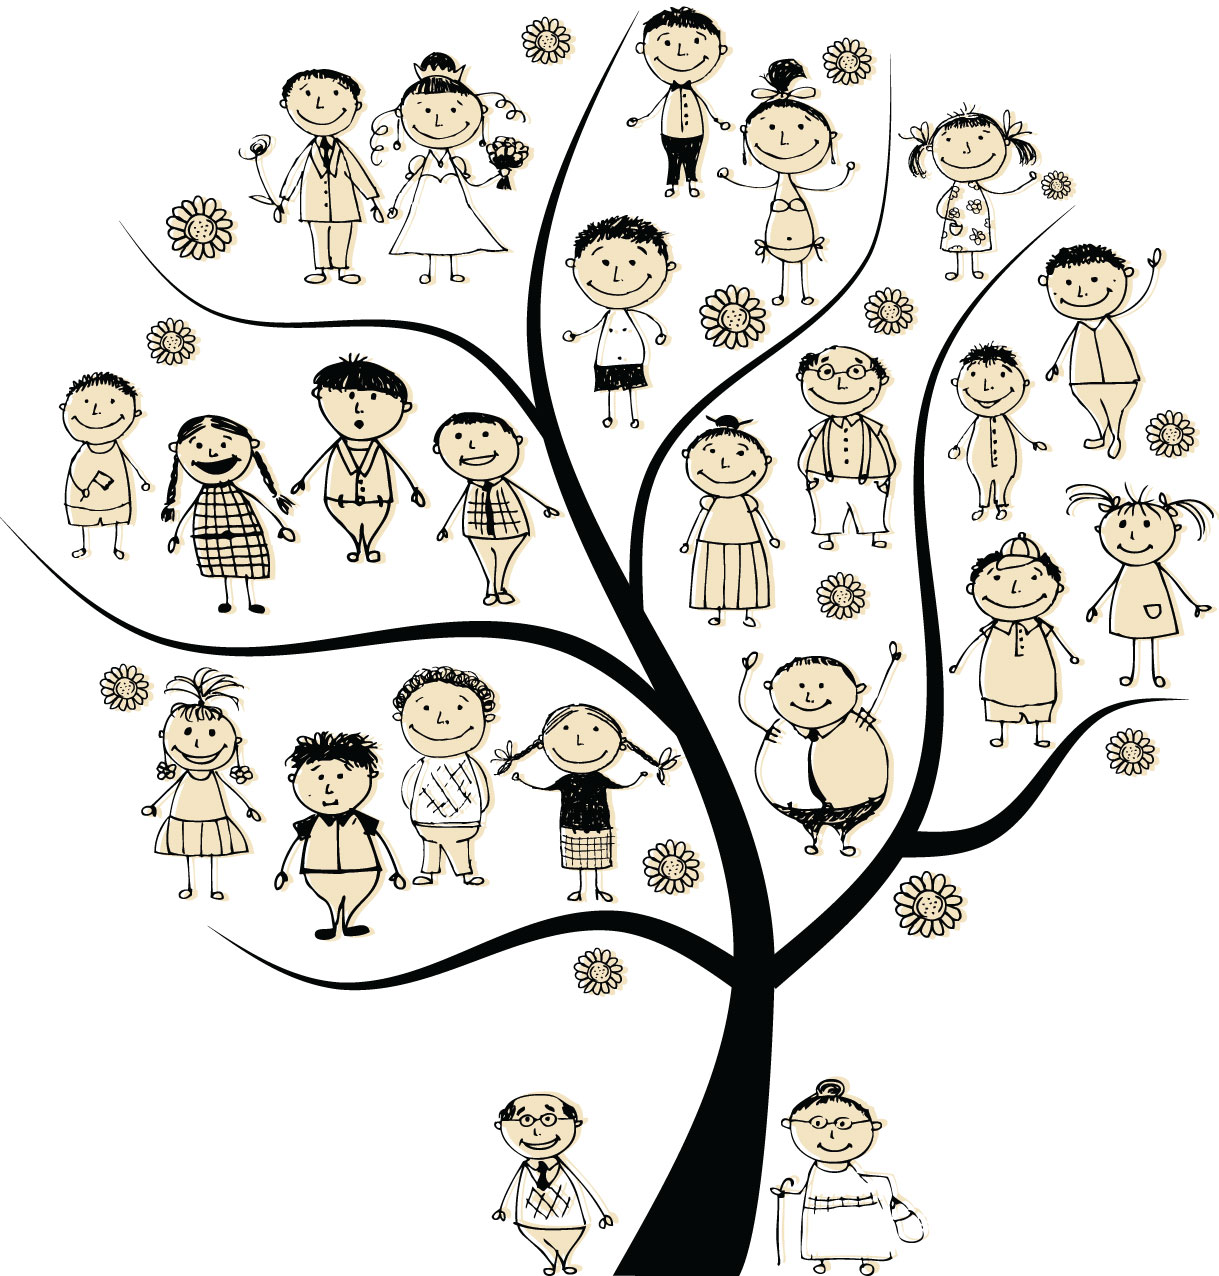 Essay of family tree